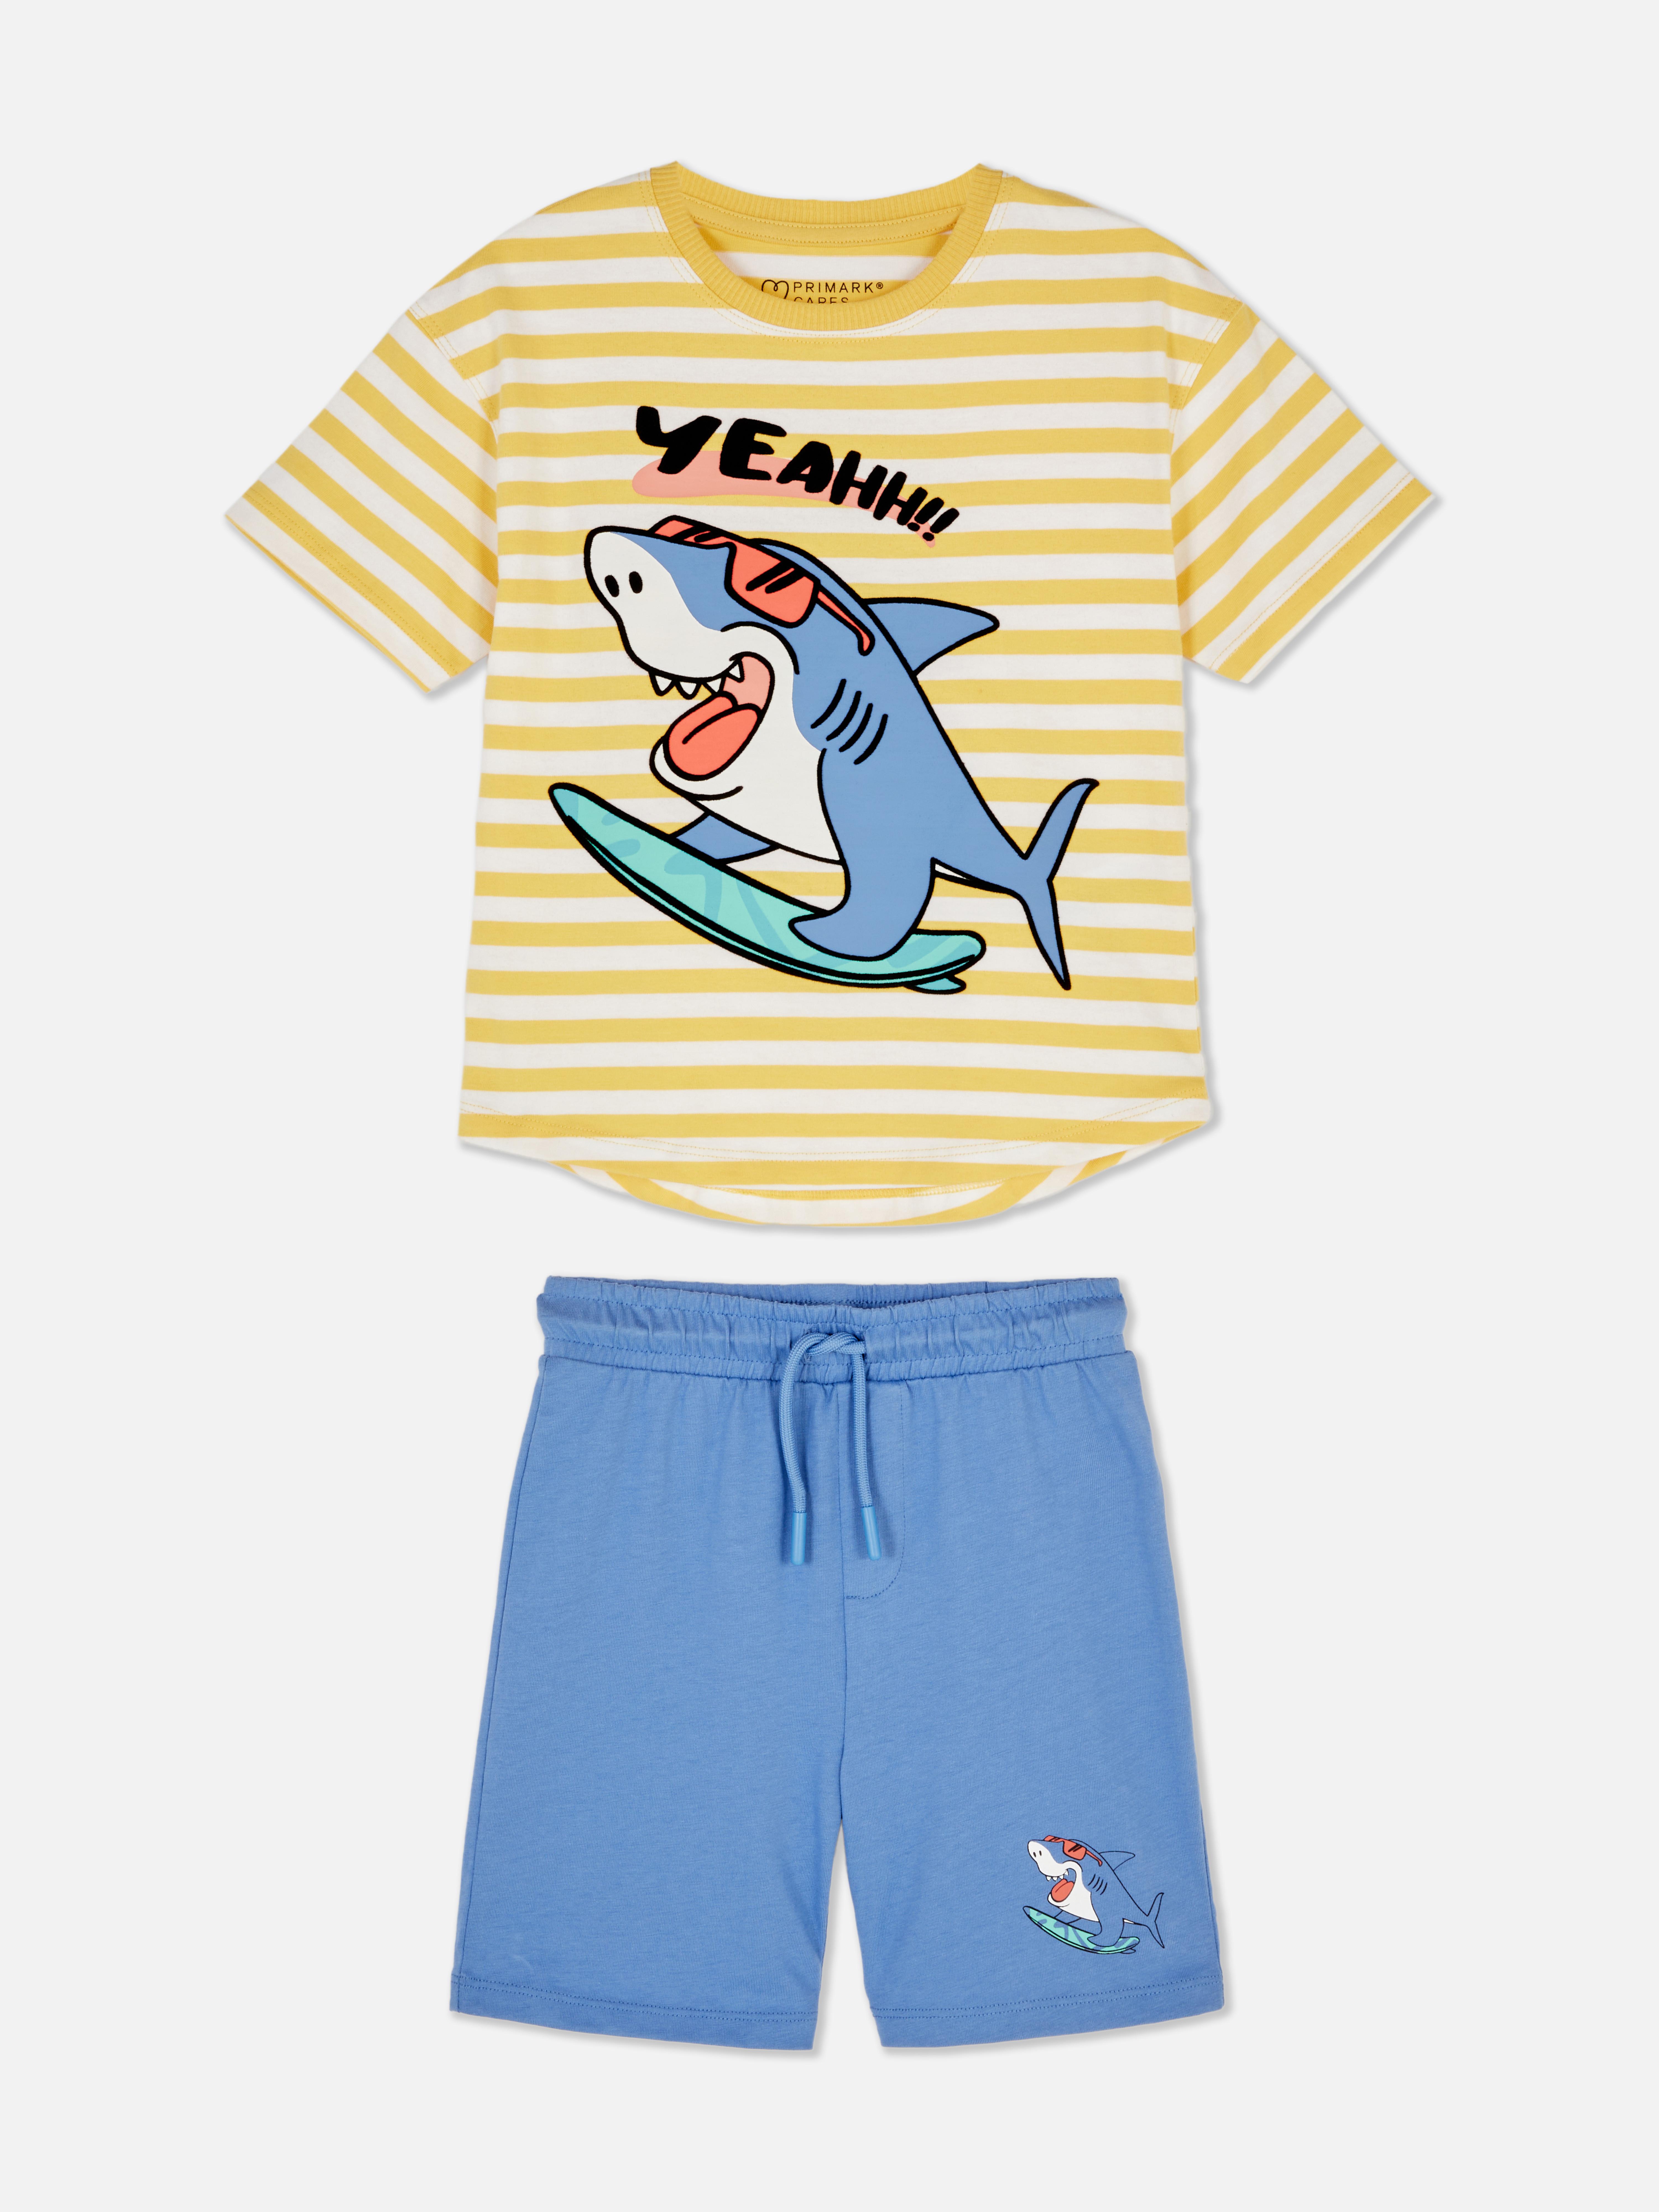 Conjunto coordenado t-shirt/calções Tubarão